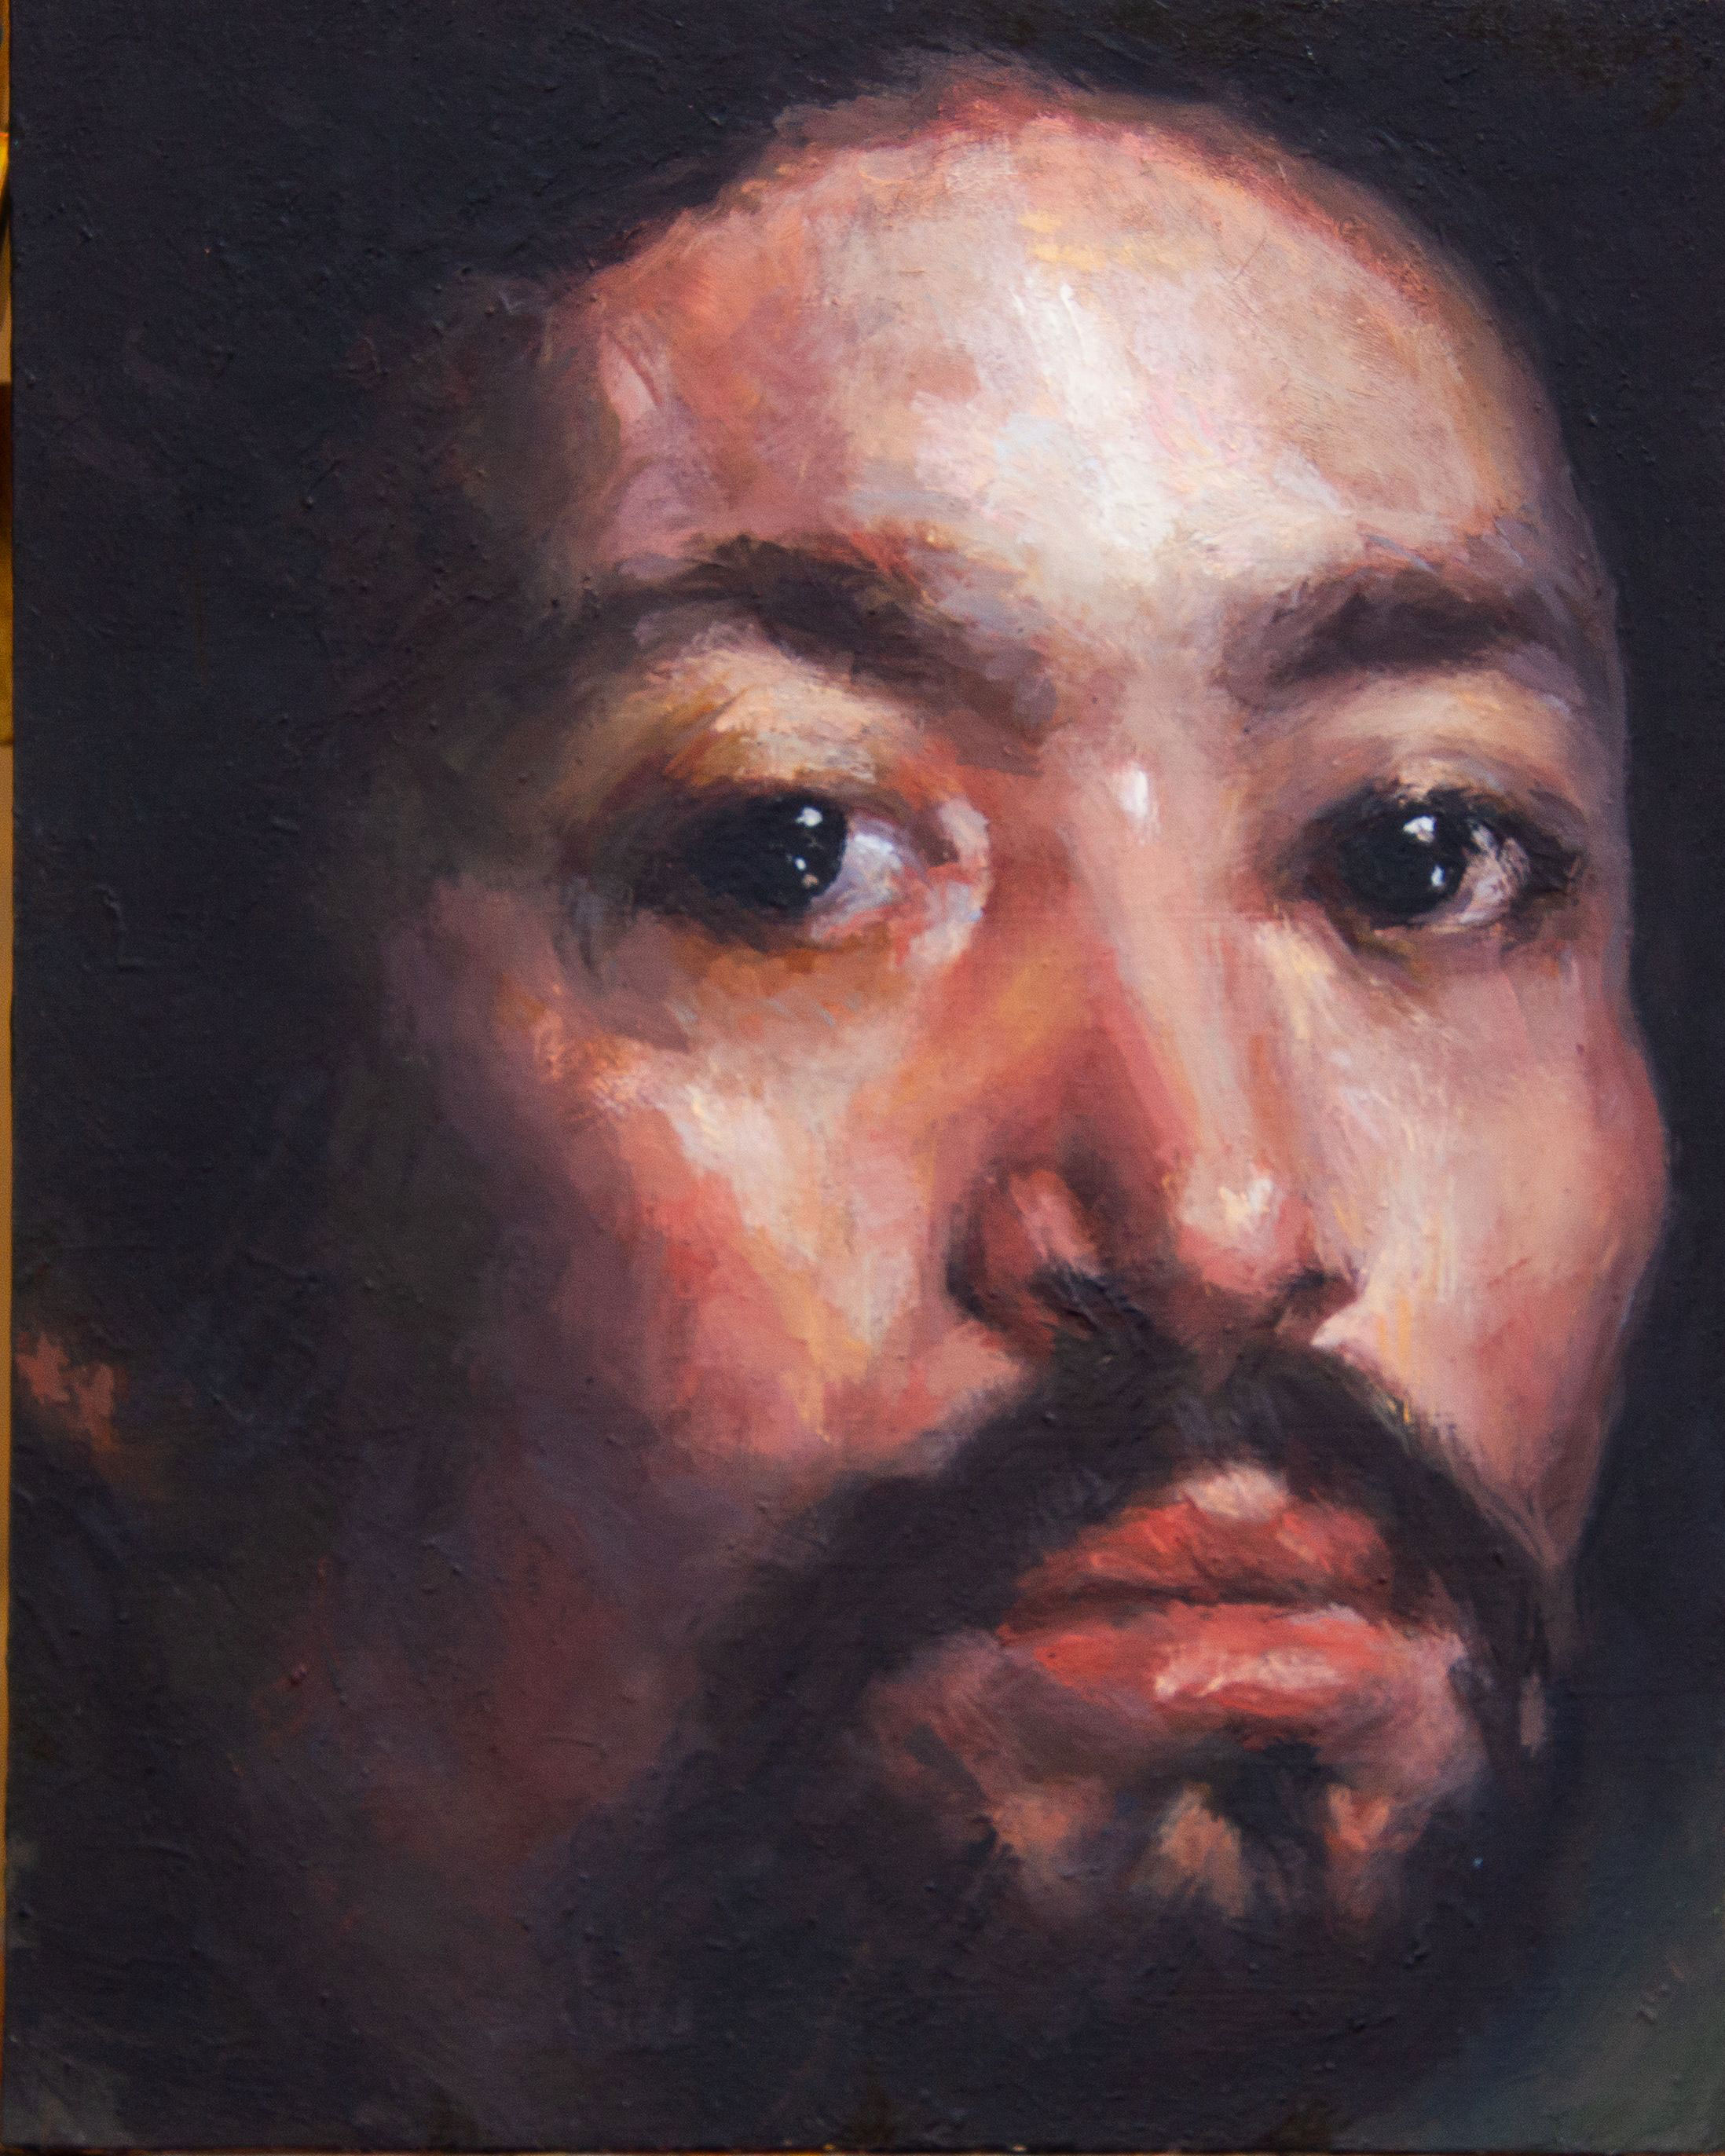 Detail of Portrait of Juan de Pareja 1650 8 in x 10in oil on wood panel ©2022